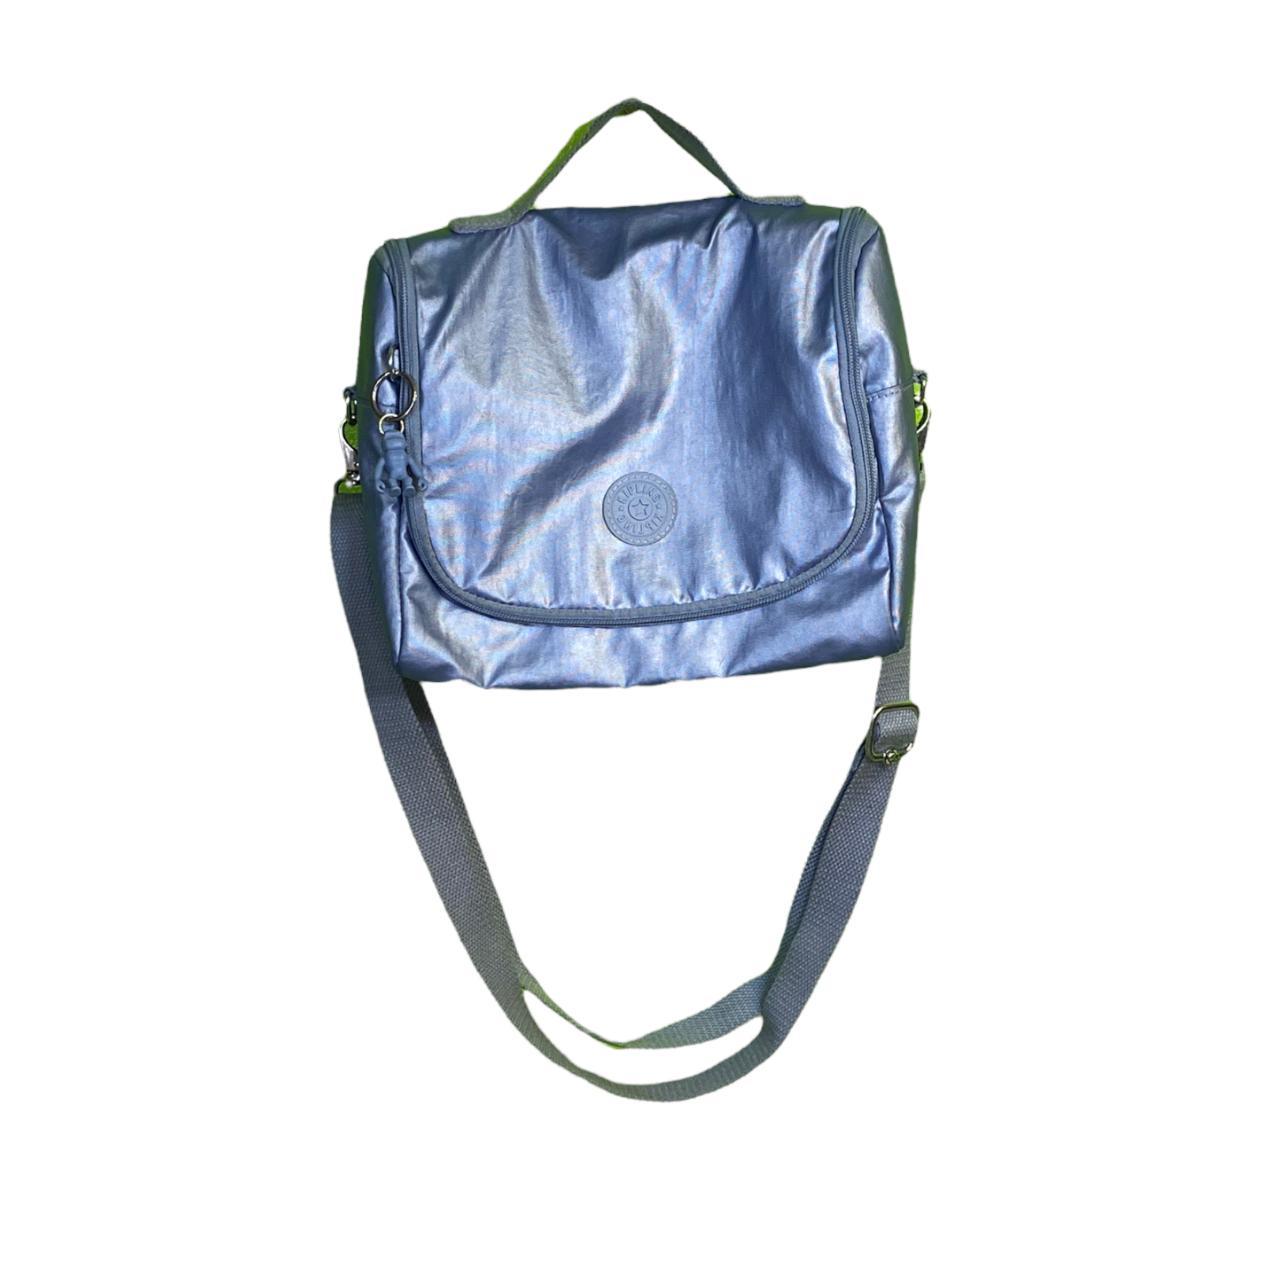 Kipling Women's Blue Bag